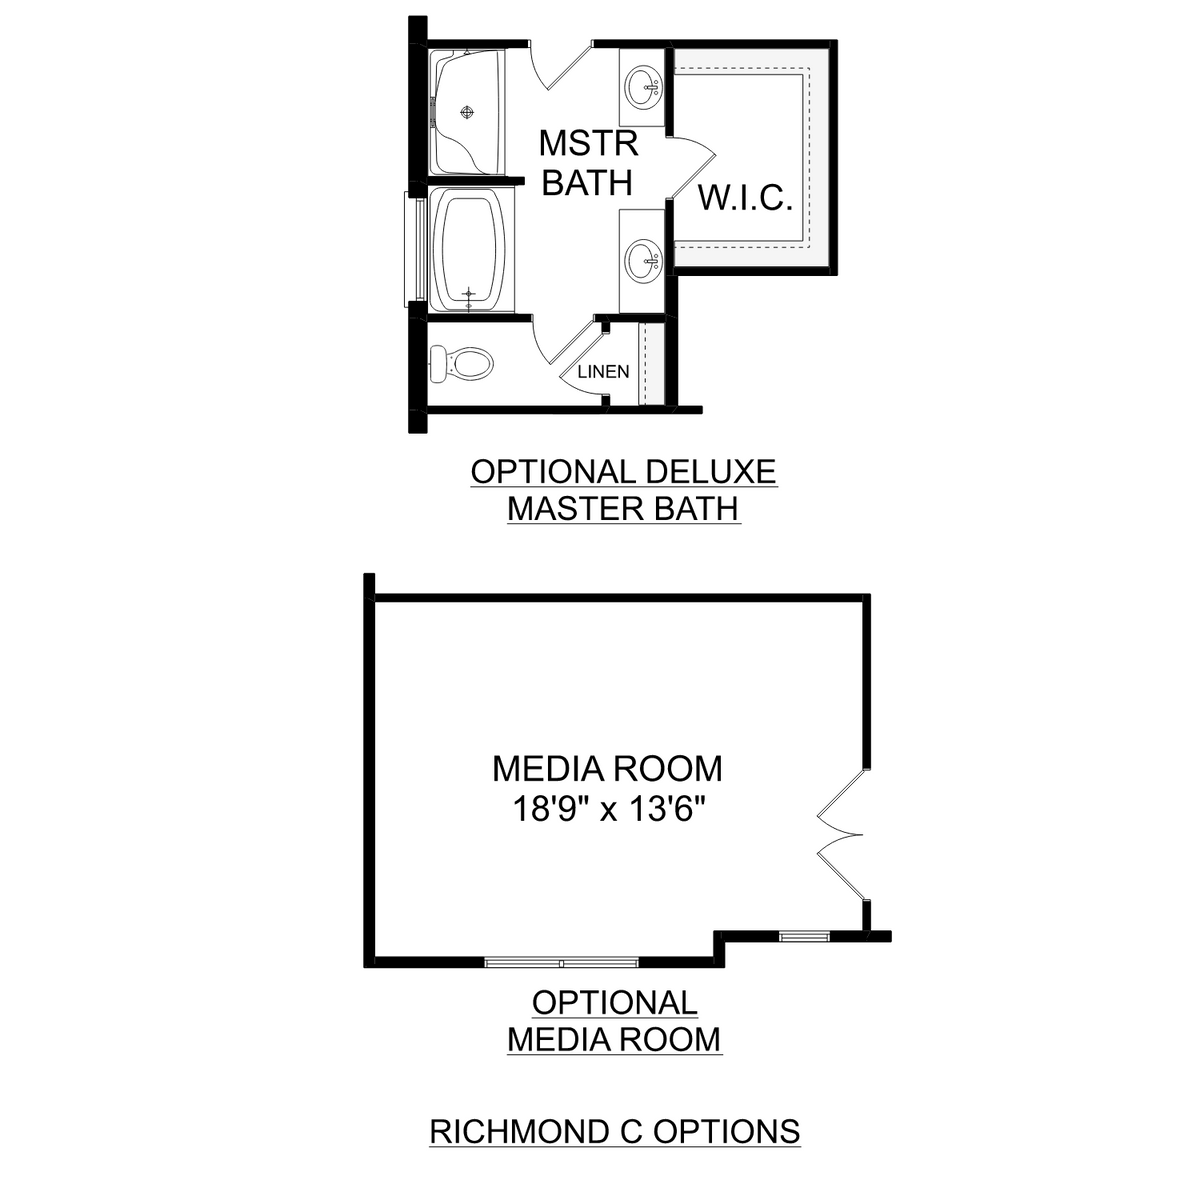 3 - The Richmond C floor plan layout for 27404 Mckenna Drive in Davidson Homes' Mallard Landing community.